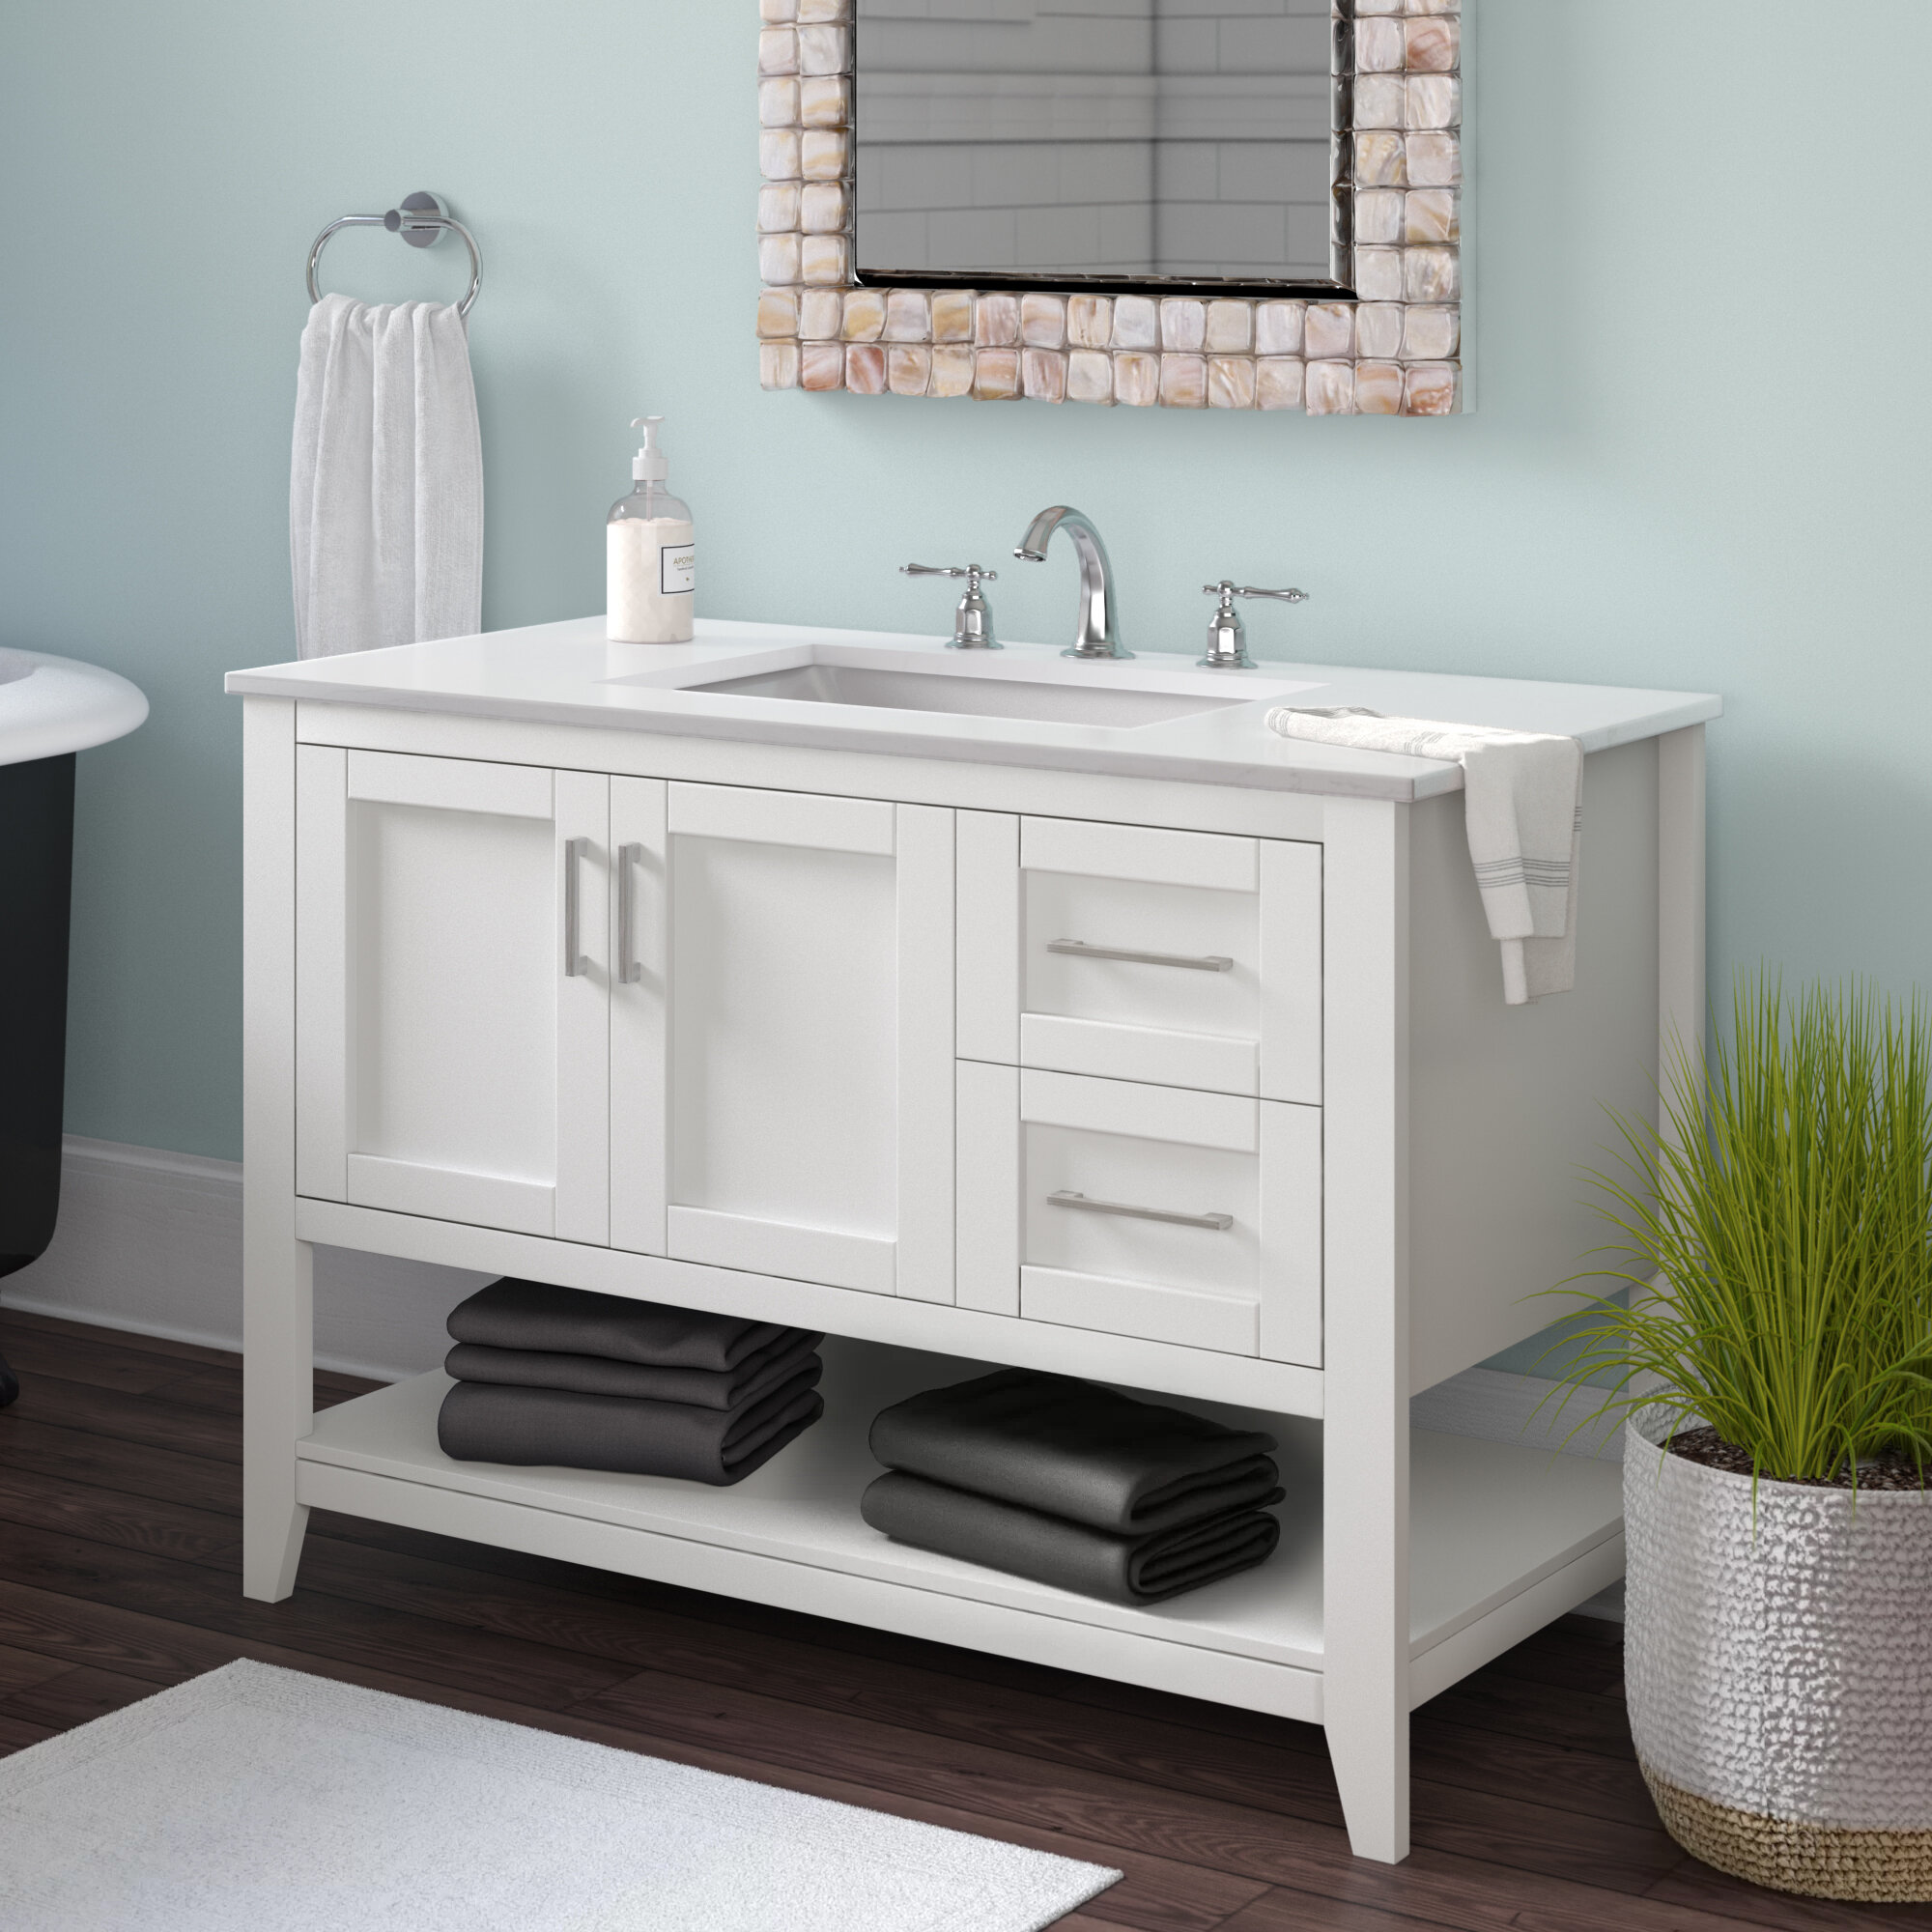 Beachcrest Home Caoimhe 42 Single Bathroom Vanity Set Reviews Wayfairca